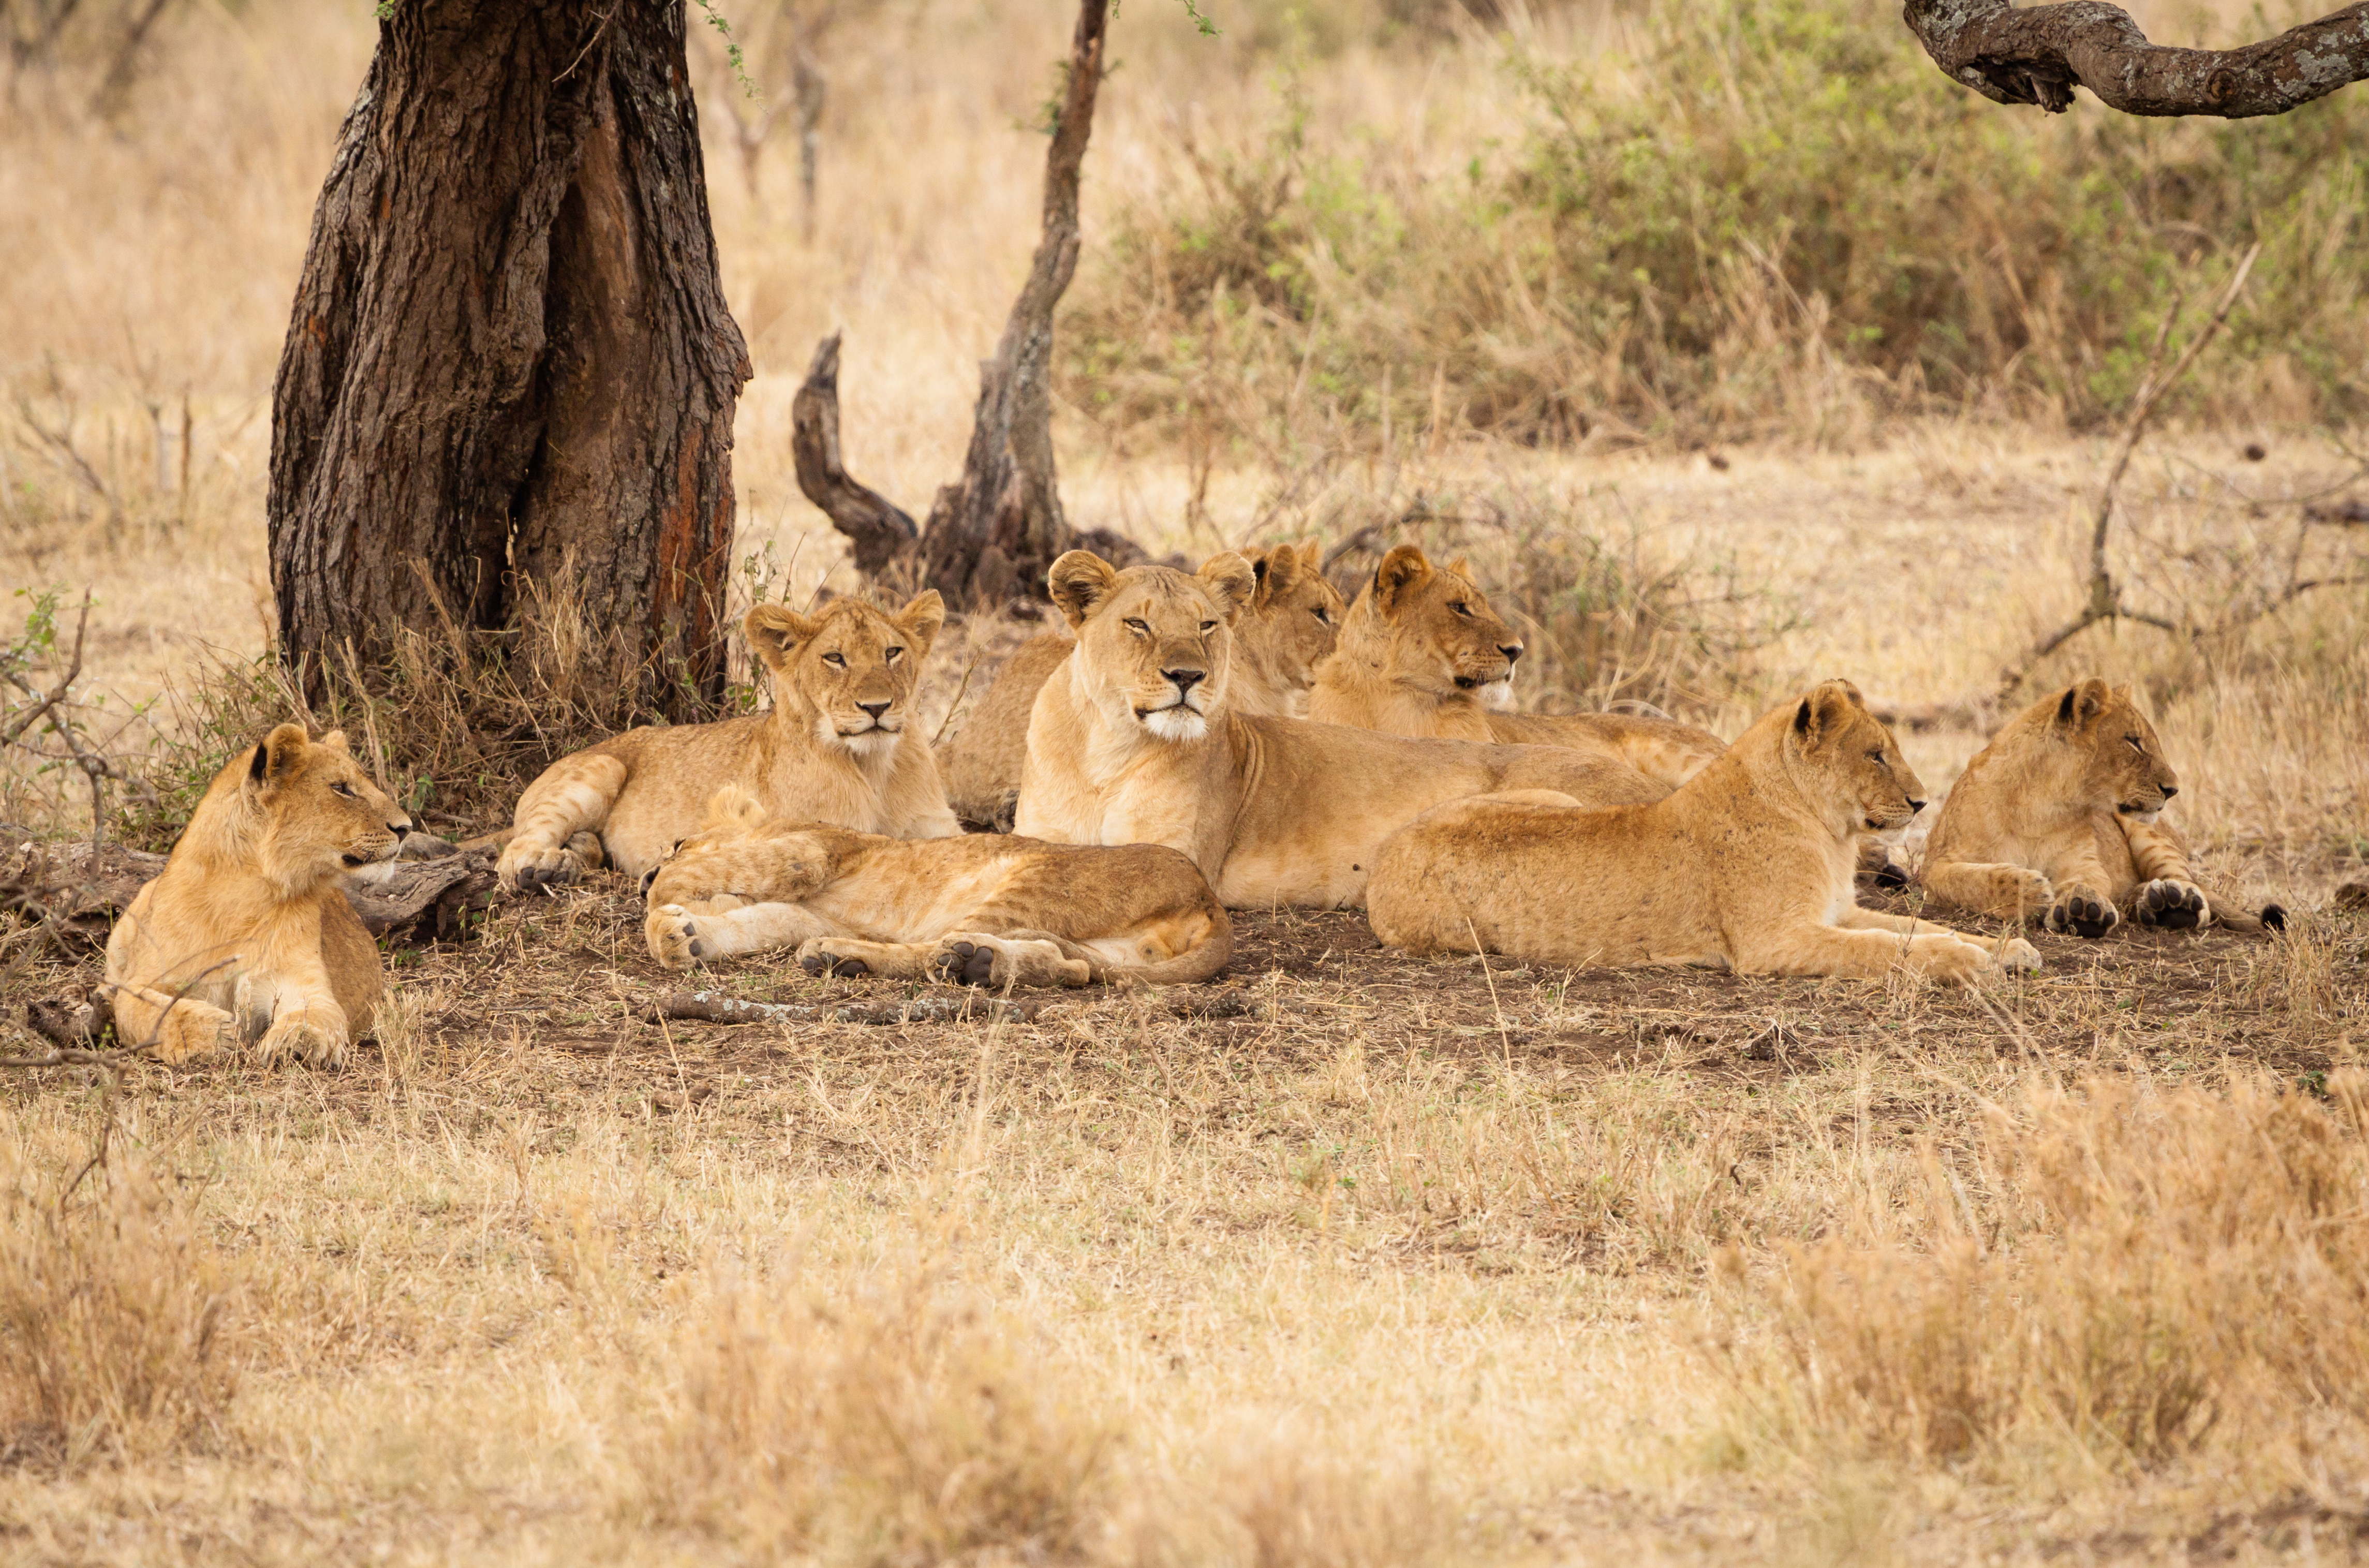 Les lions sont les seuls félins sauvages à vivre en groupe, ils sont capables de s’entraider et de se coordonner pour attraper de grandes proies, à plusieurs. © angelo chiariello, Adobe Stock